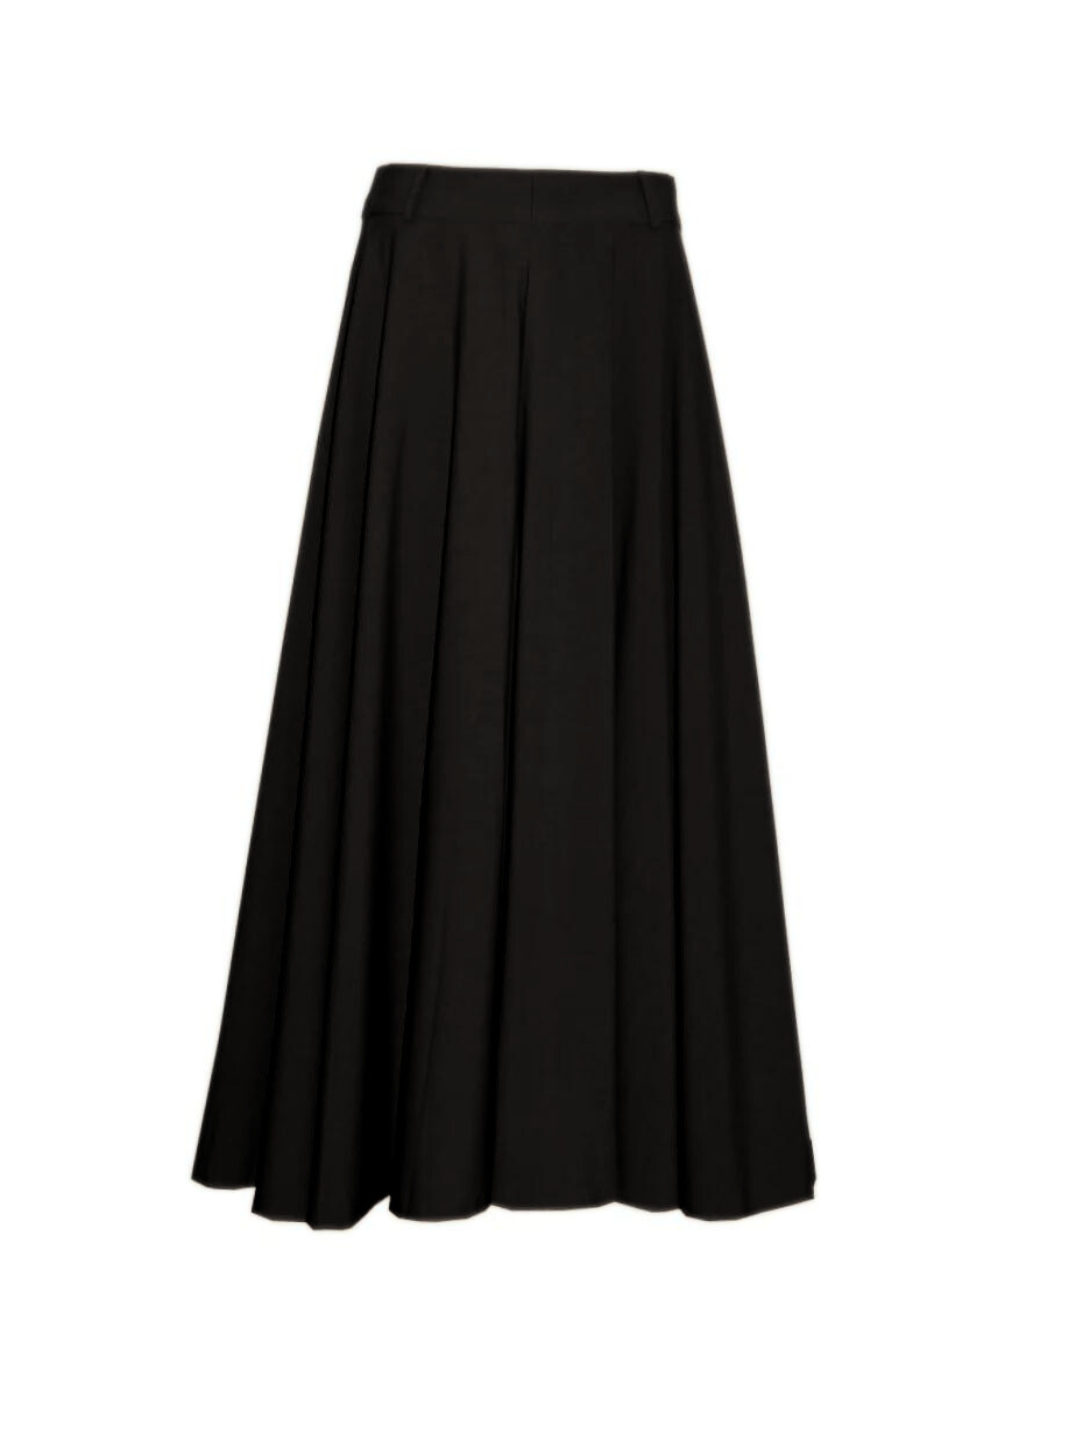 Celia Skirt (Black)